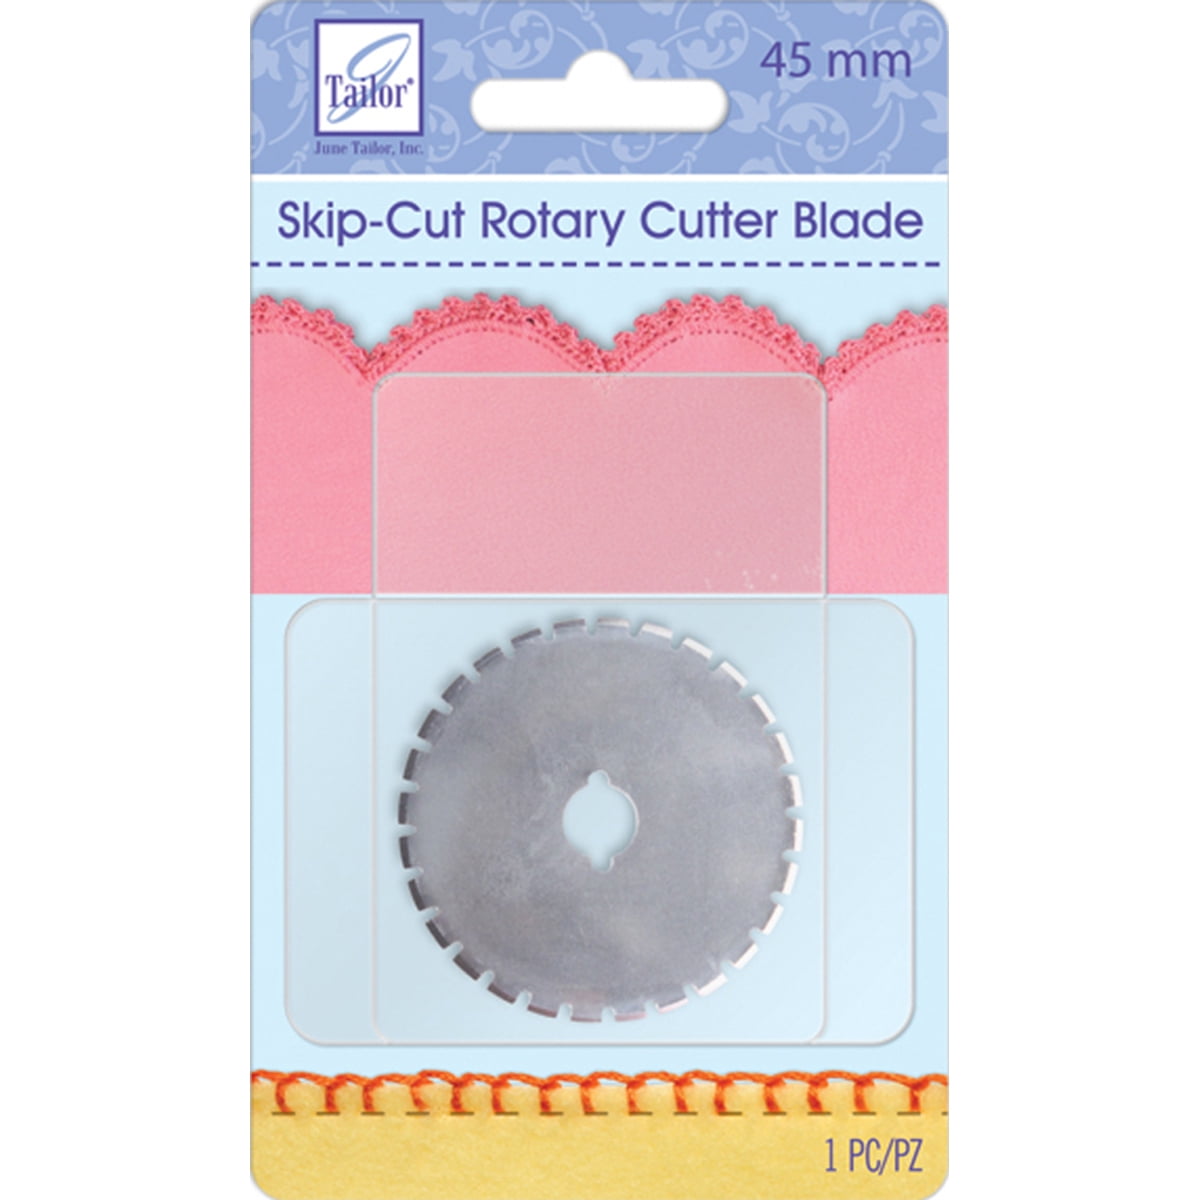 June Tailor Rotary Cutter Blade Refill, 45 mm Skip Cut